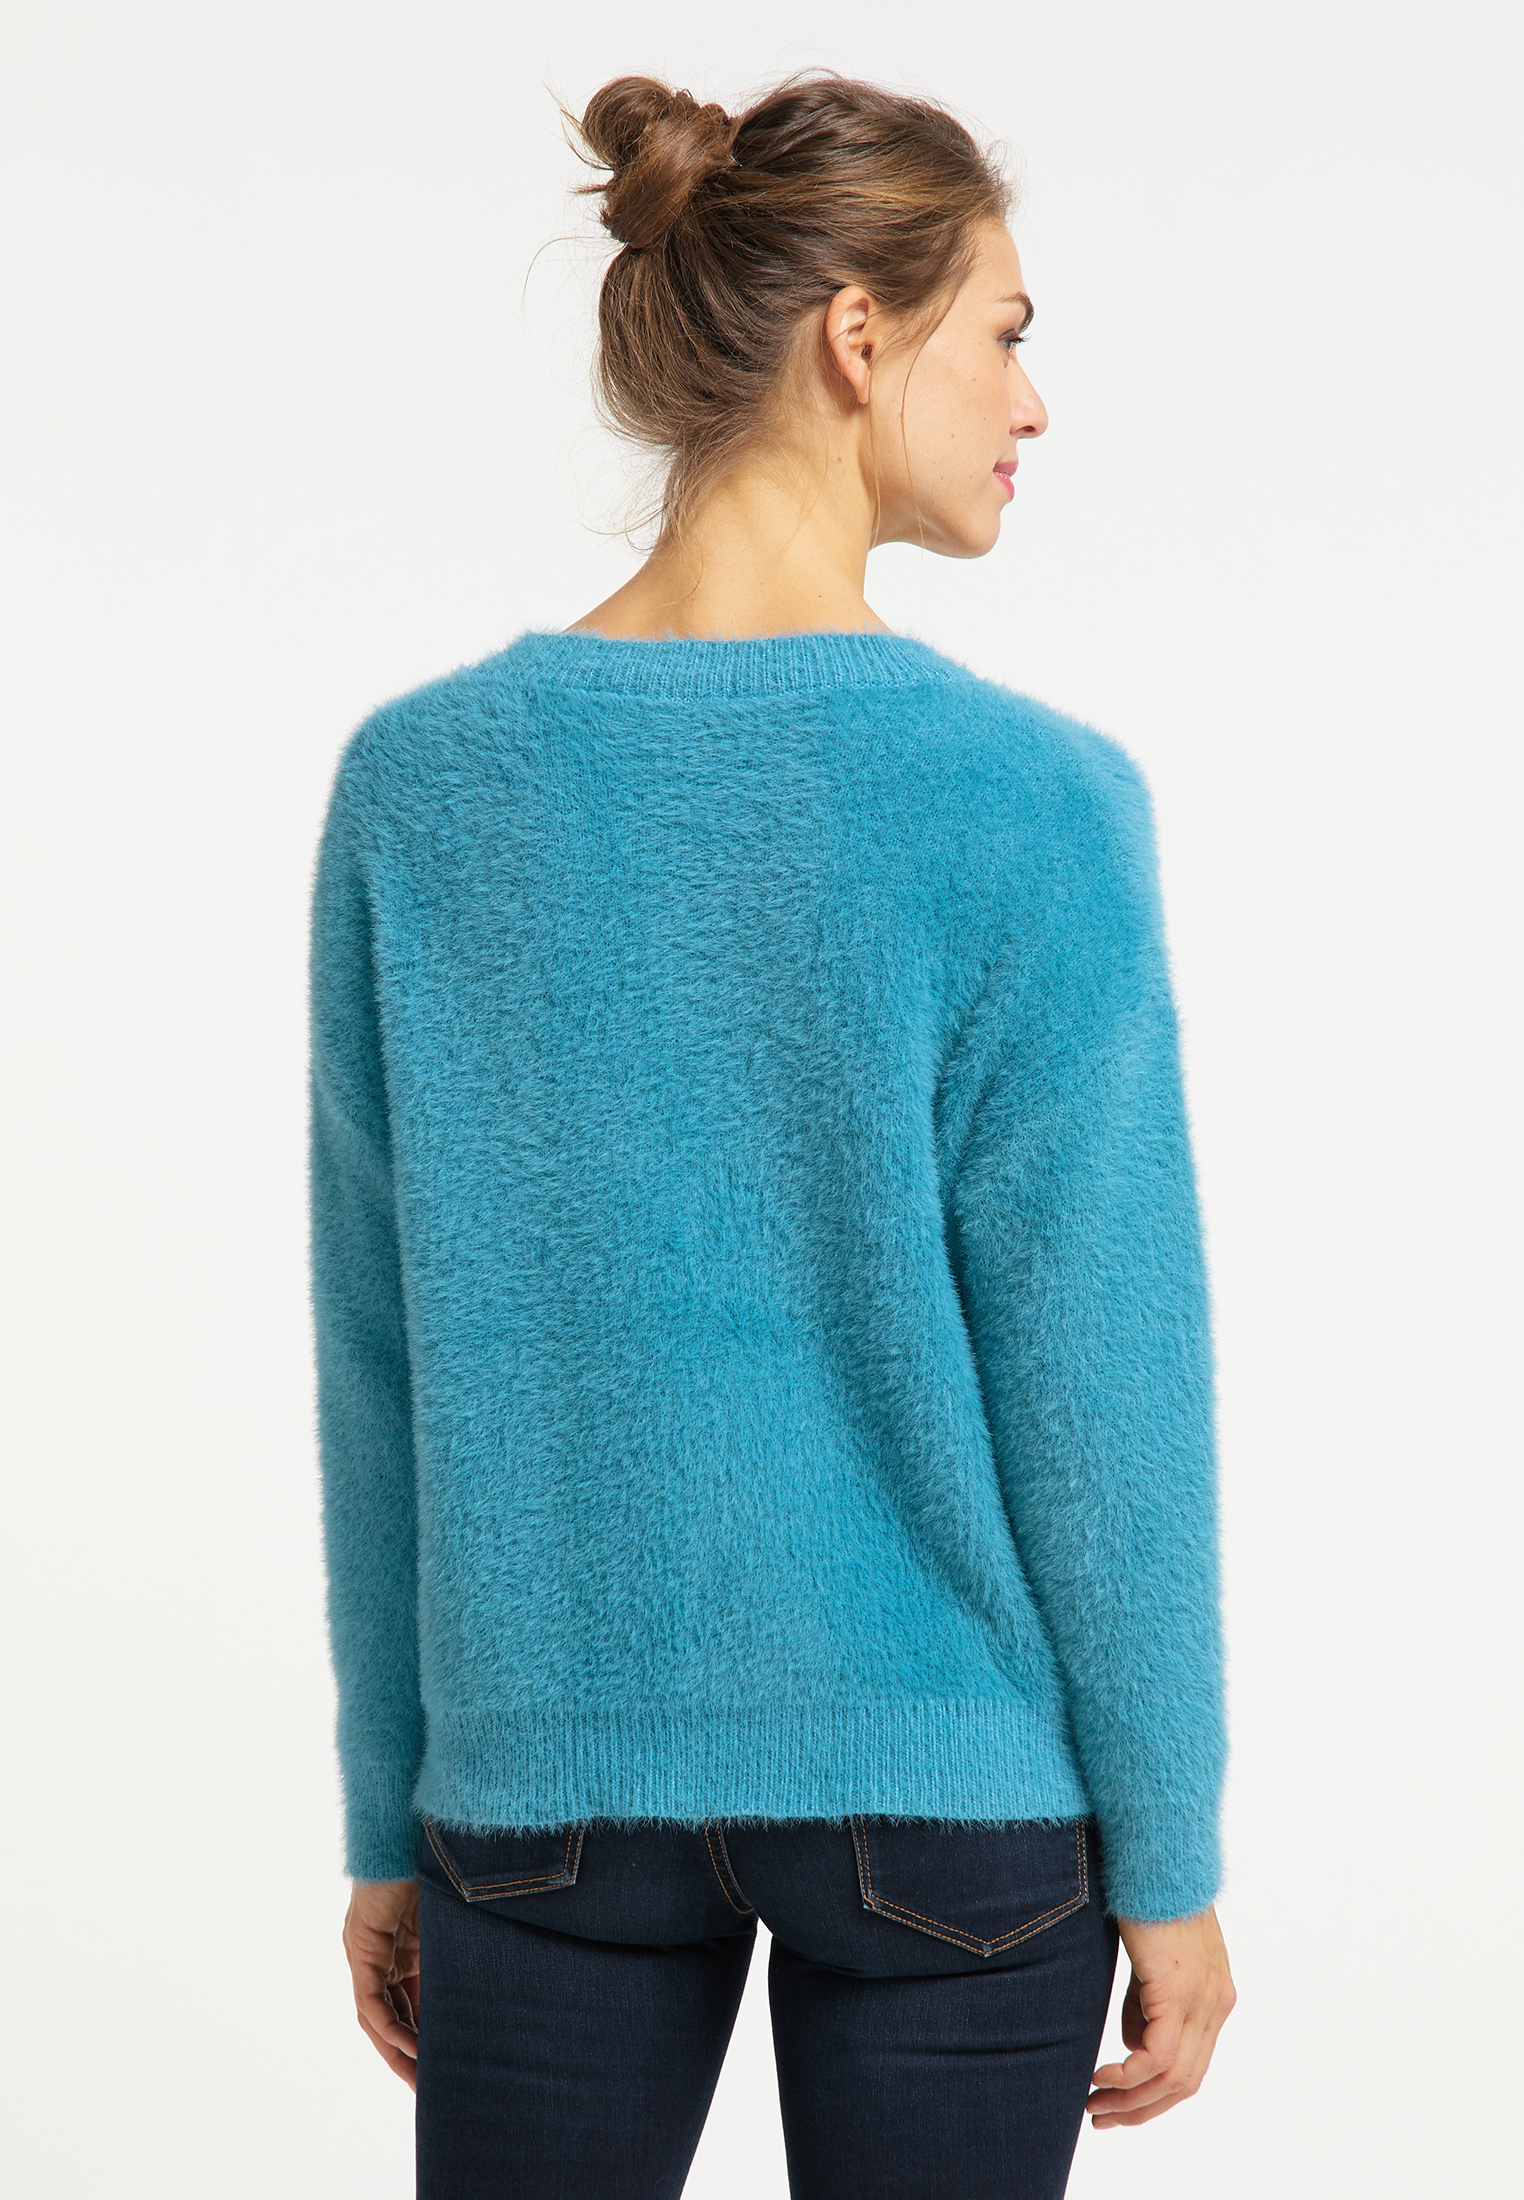 Odzież Kobiety Usha Sweter w kolorze Błękitnym 